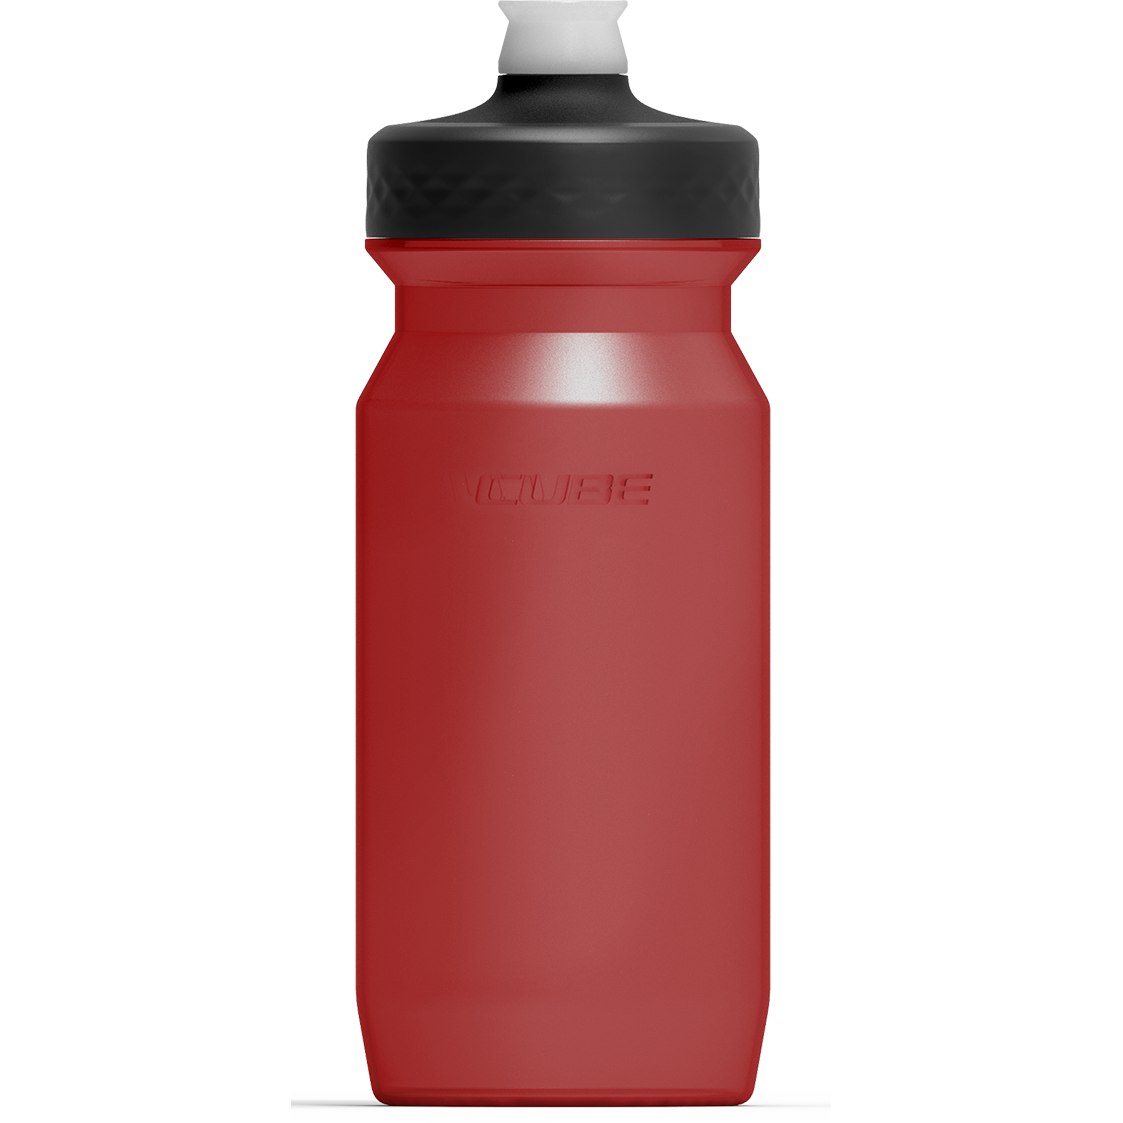 Produktbild von CUBE Trinkflasche Grip 0.5l - red